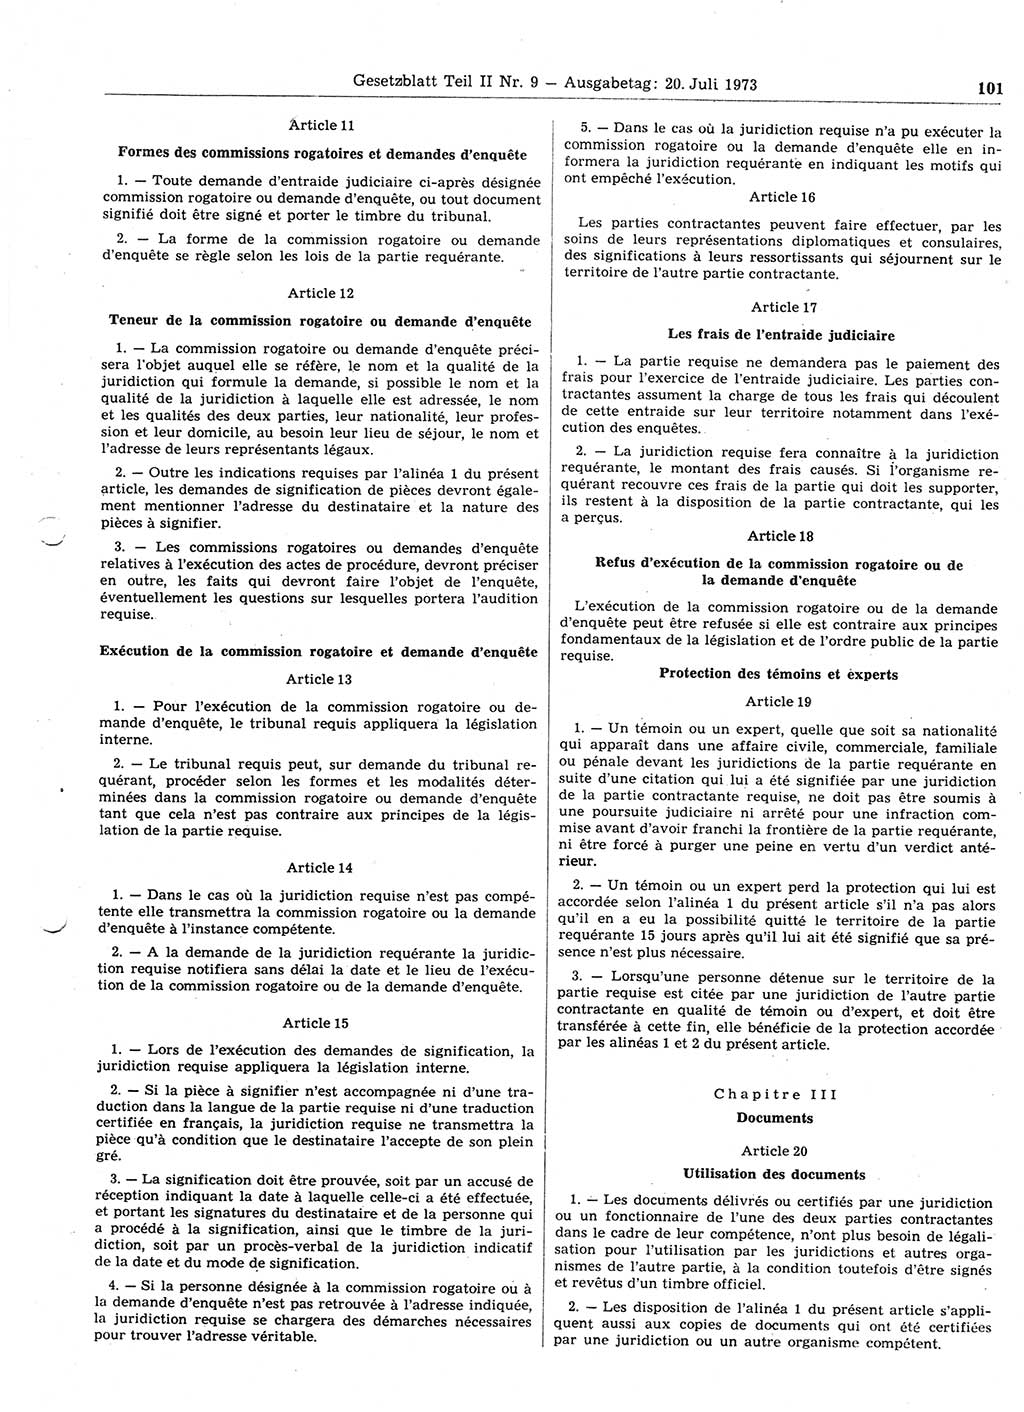 Gesetzblatt (GBl.) der Deutschen Demokratischen Republik (DDR) Teil ⅠⅠ 1973, Seite 101 (GBl. DDR ⅠⅠ 1973, S. 101)